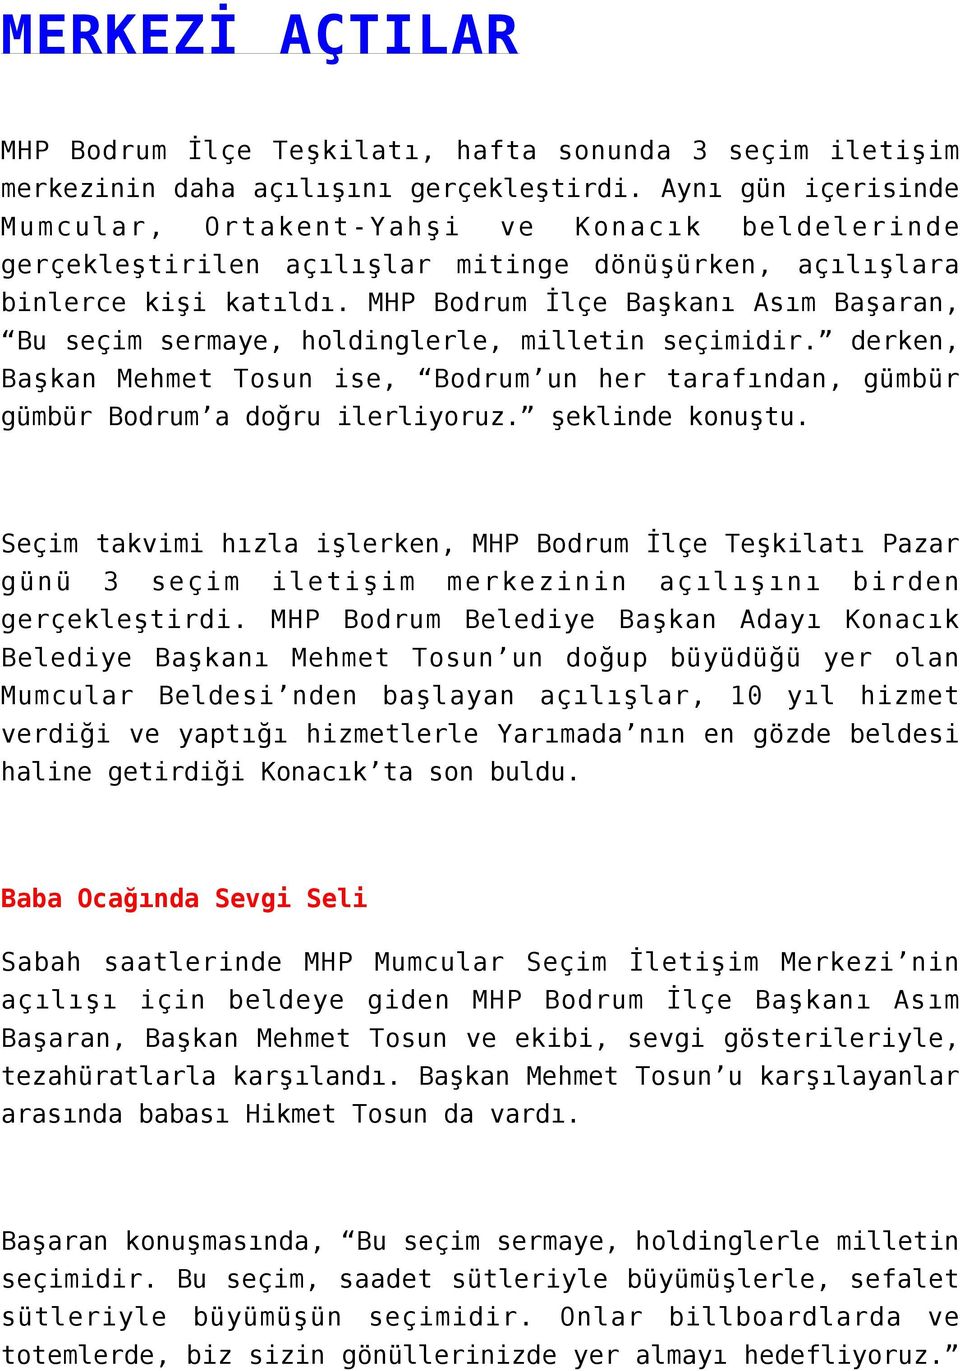 MHP Bodrum İlçe Başkanı Asım Başaran, Bu seçim sermaye, holdinglerle, milletin seçimidir. derken, Başkan Mehmet Tosun ise, Bodrum un her tarafından, gümbür gümbür Bodrum a doğru ilerliyoruz.